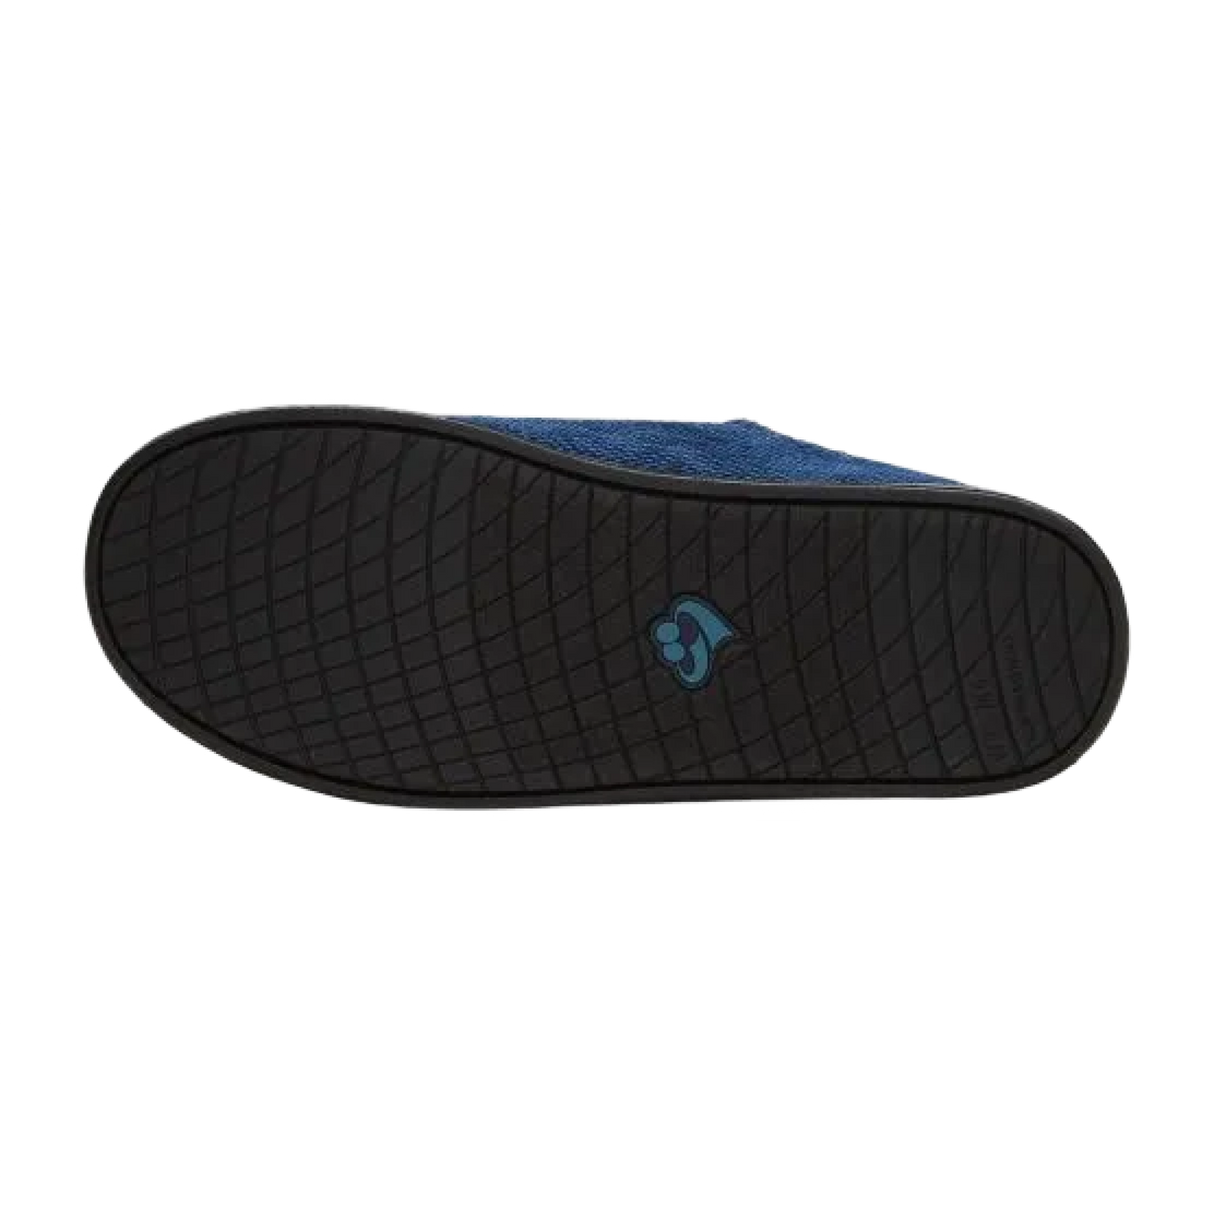 Bottom of slipper, slip resistant soles